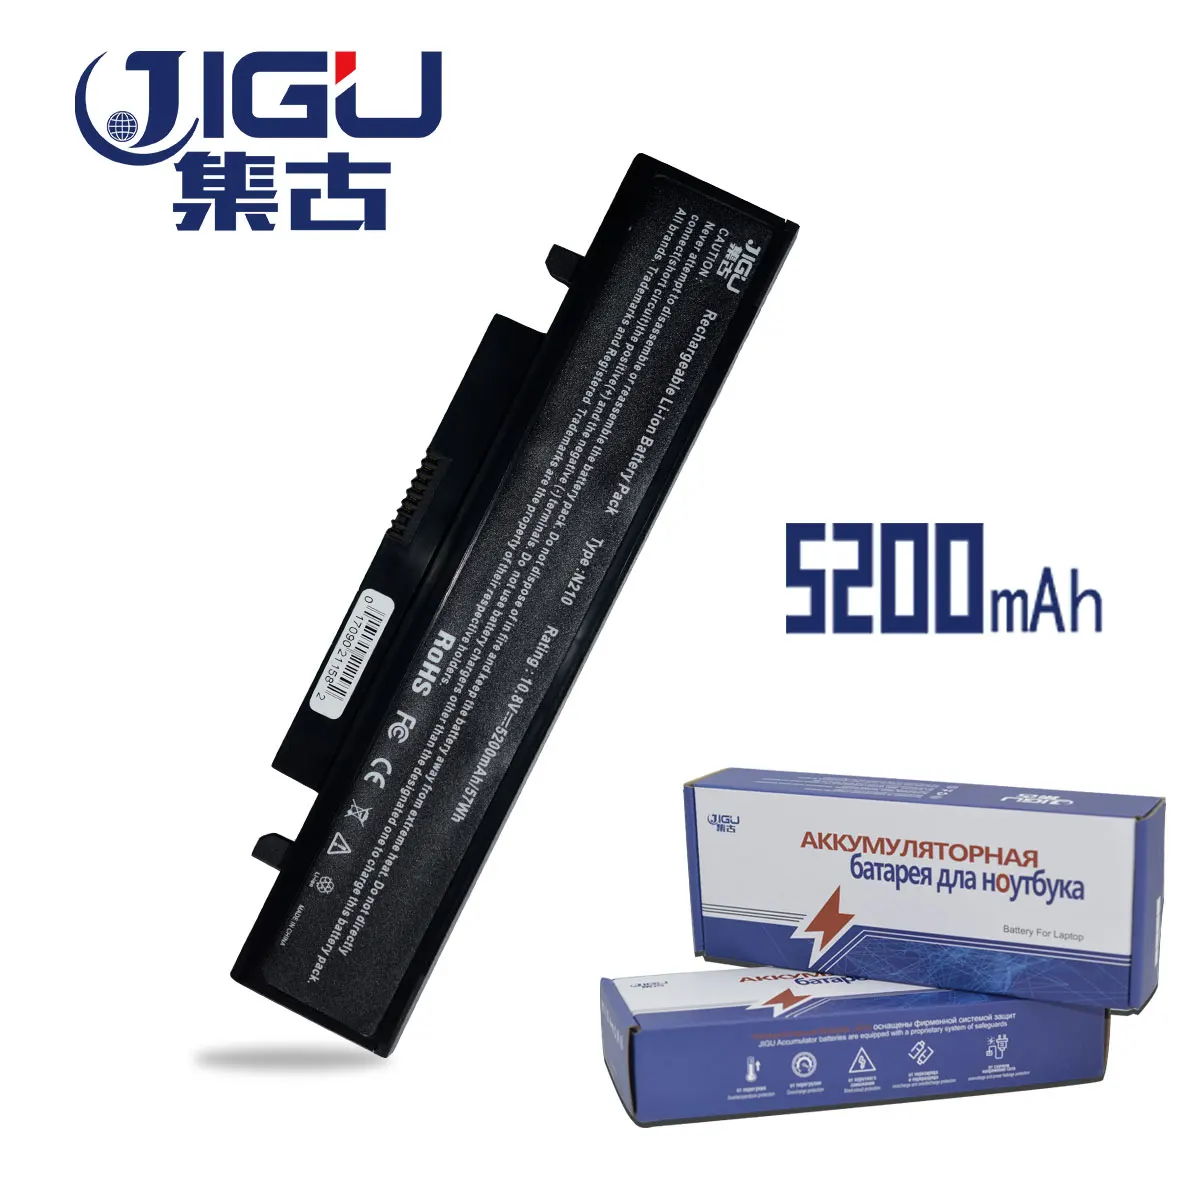 Jgu-batería para SAMSUNG X318, X320, X418, X420, X520, Q328, Q330, N210, N218, N220, NB30 Plus, AA-PB1VC6B